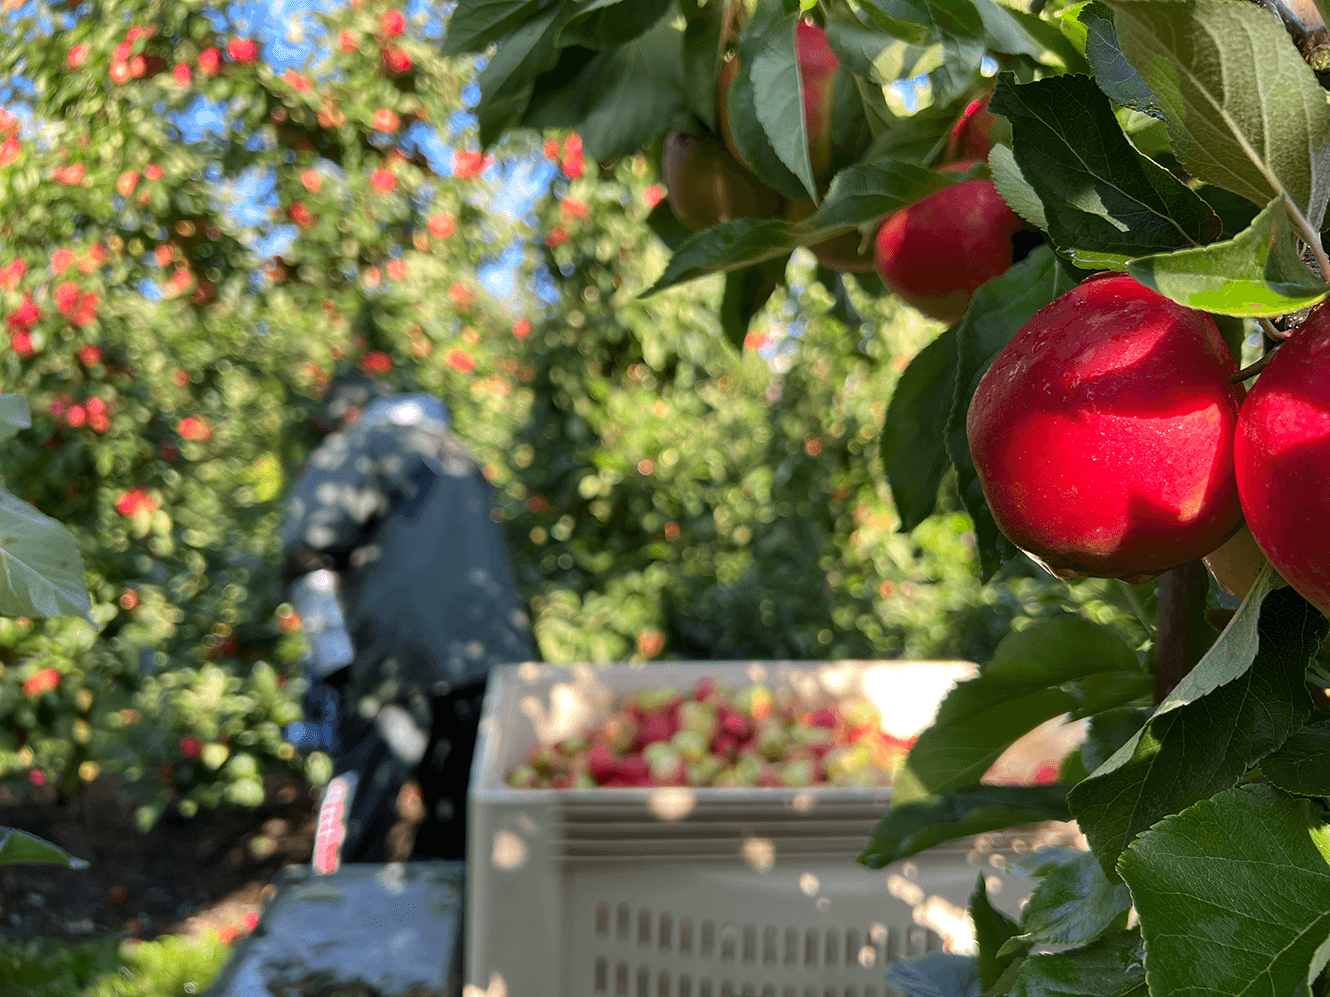 Høst af danske Elstar-æbler i Ørskov Frugt plantage